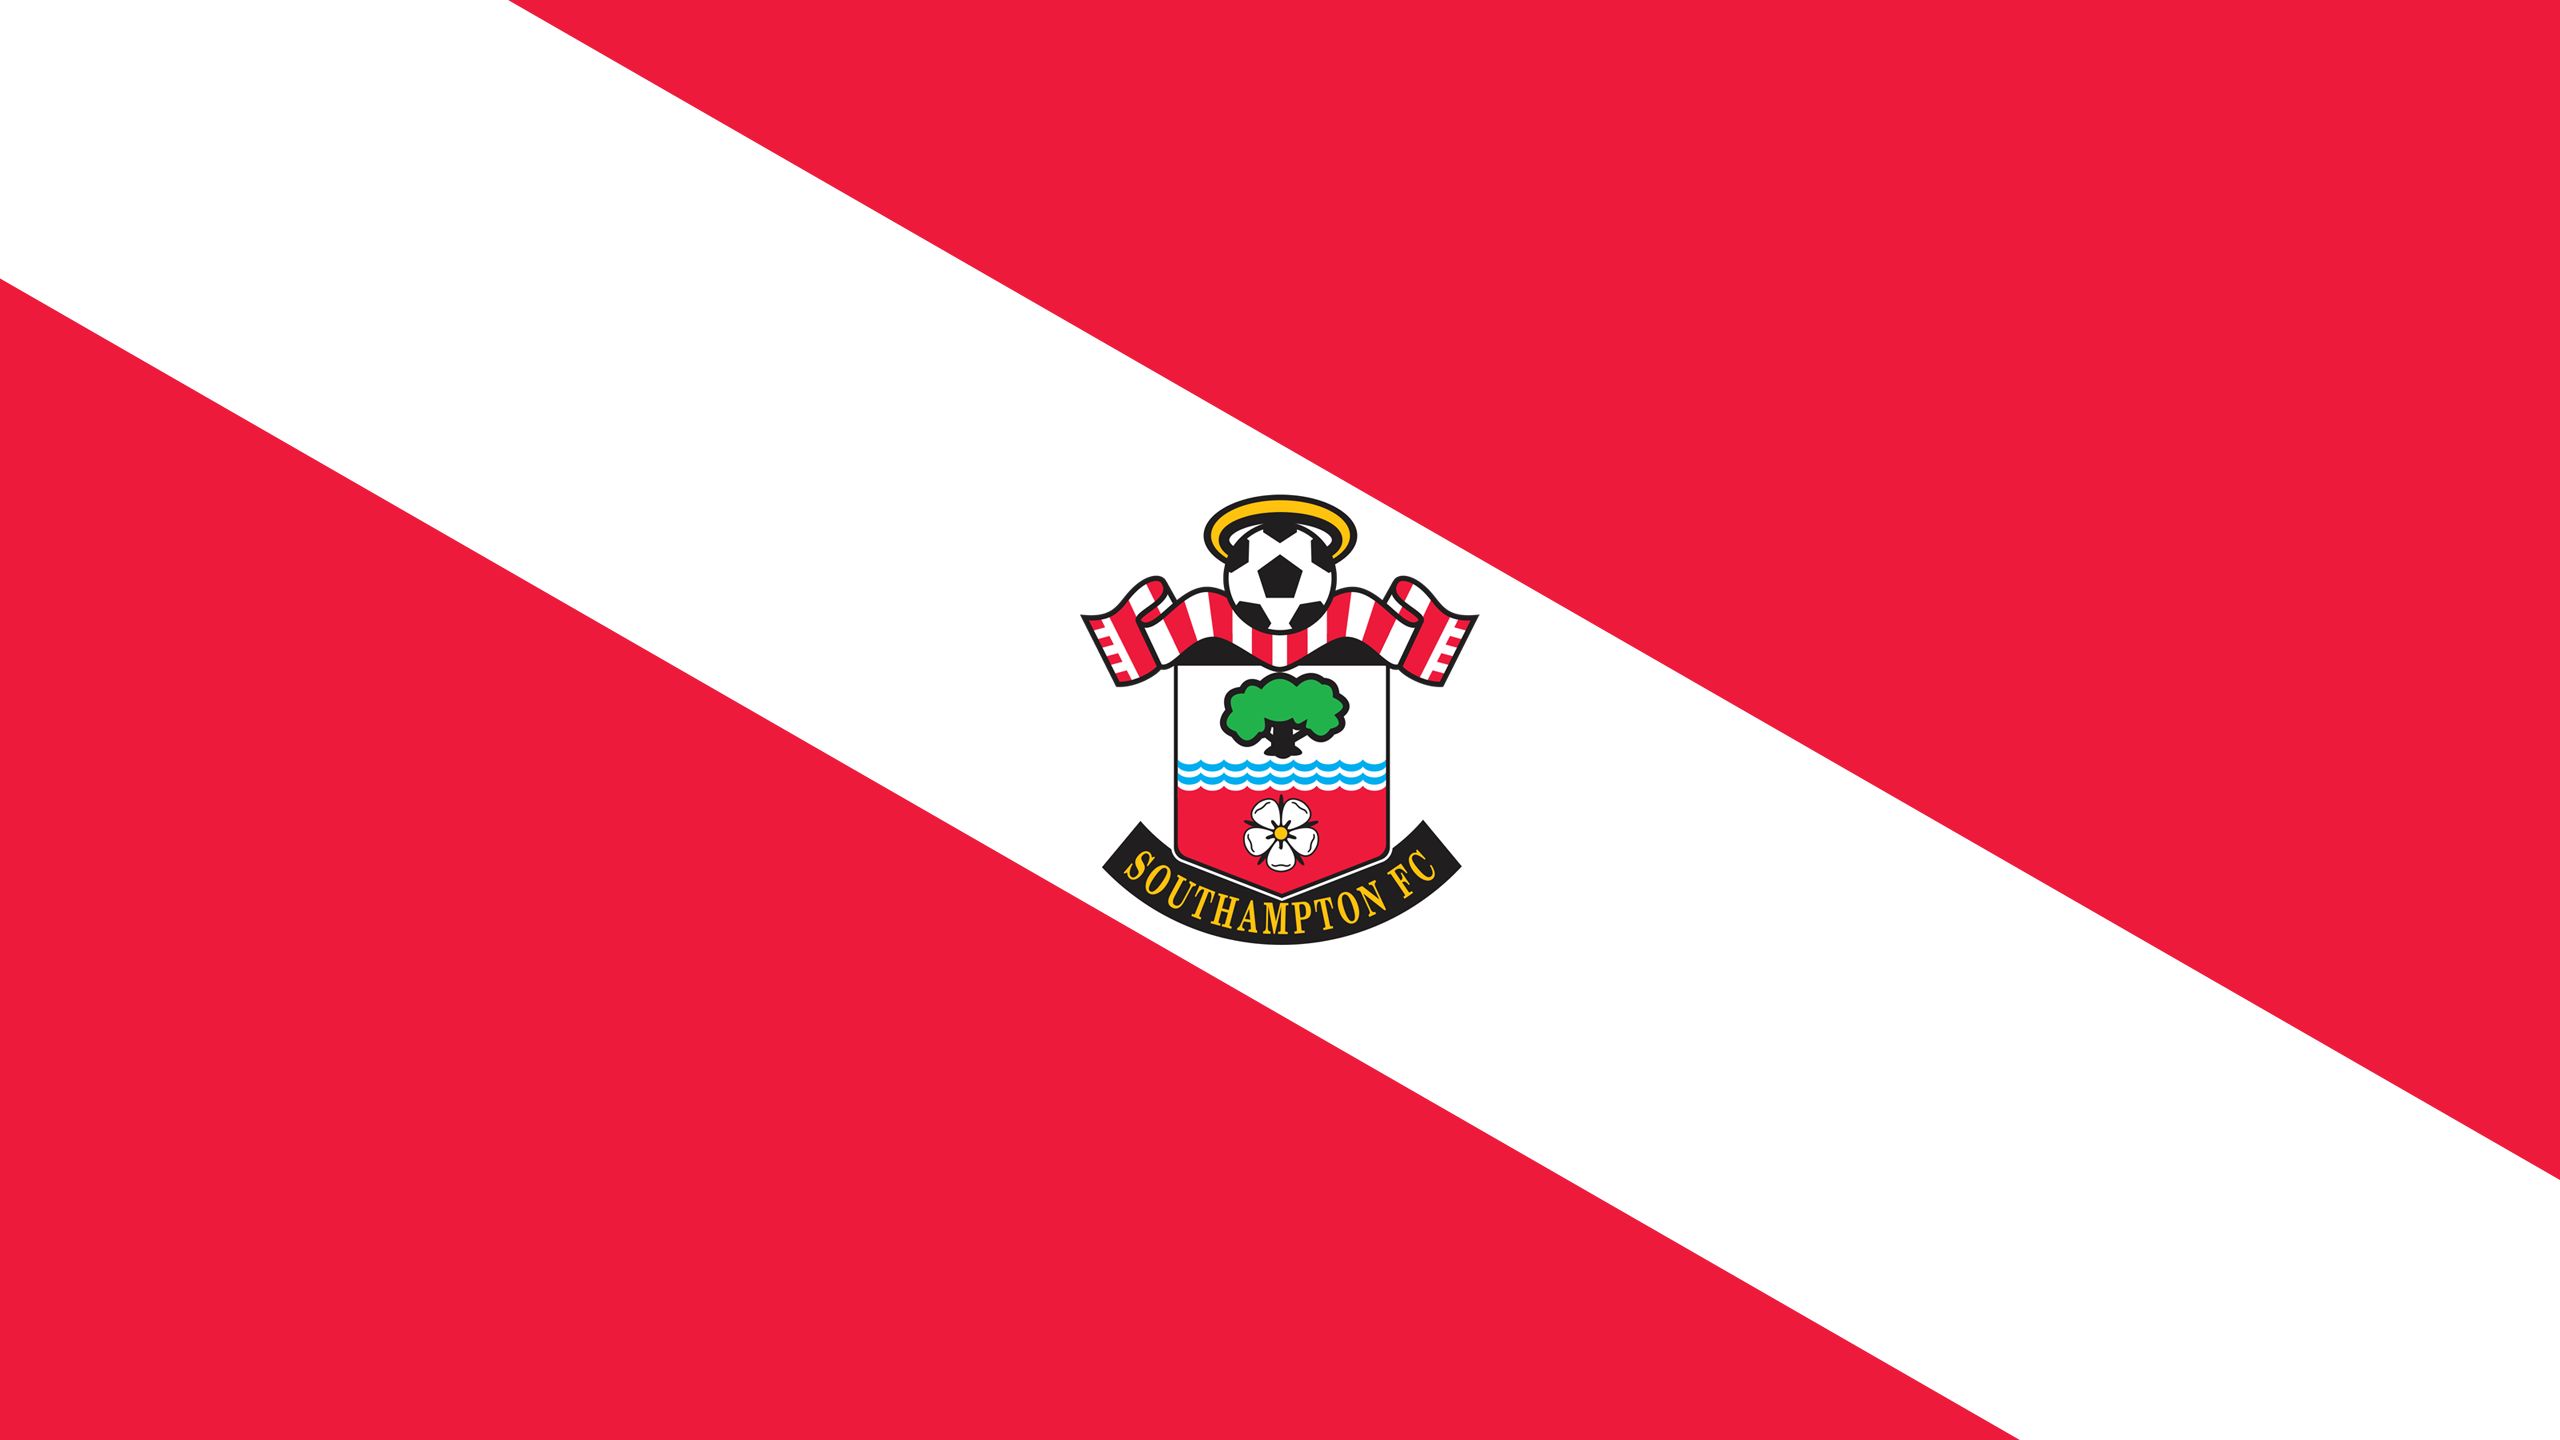 Download mobile wallpaper Sports, Logo, Emblem, Soccer, Southampton F C for free.